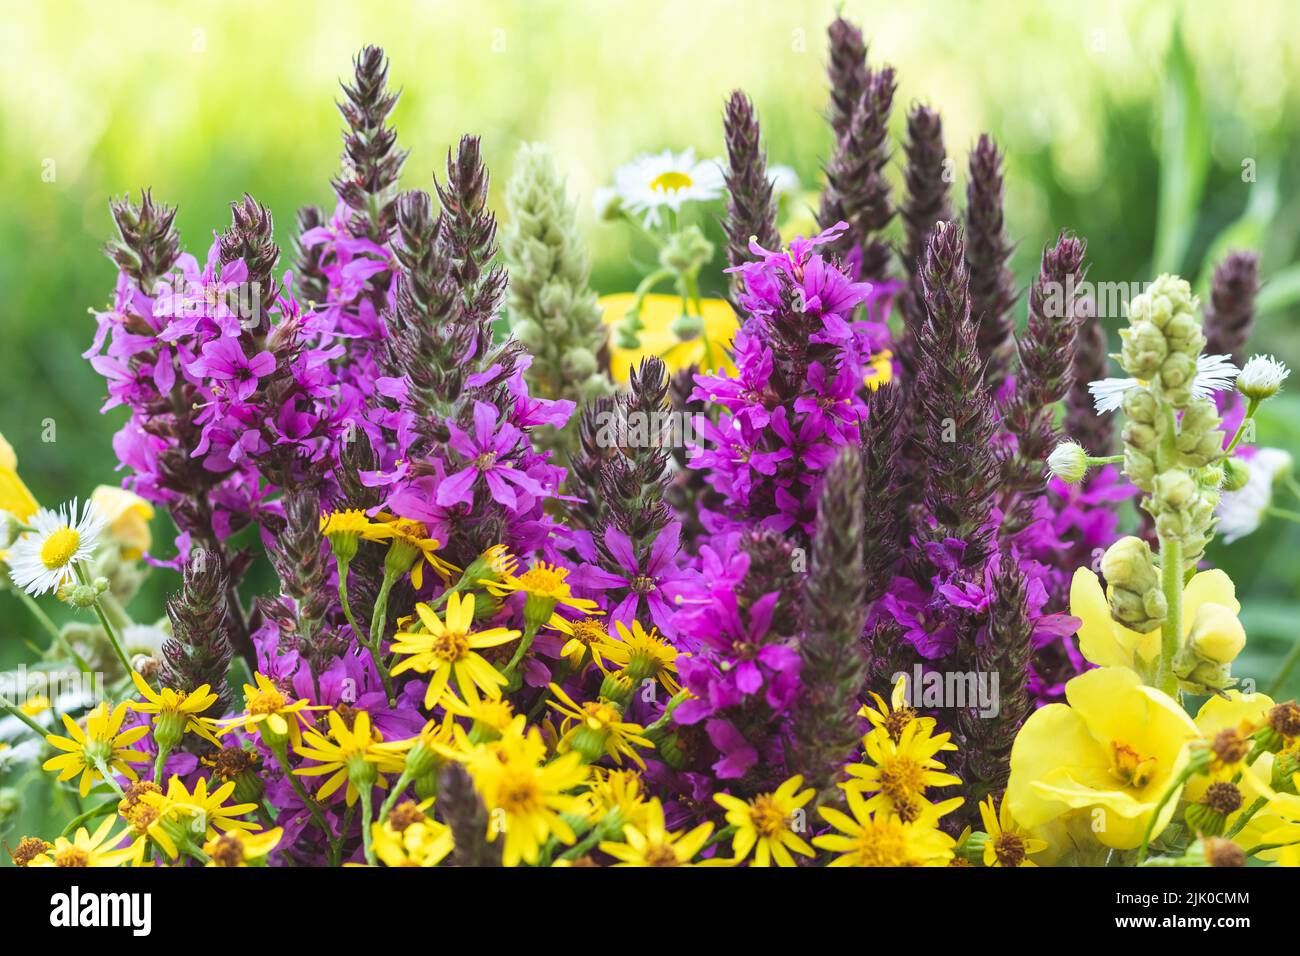 Pradera de hierbas de flores coloridas con flores silvestres de color púrpura y amarillo. Decoración artística, diseño floral. Hermoso papel pintado de naturaleza. Verano de verano Foto de stock